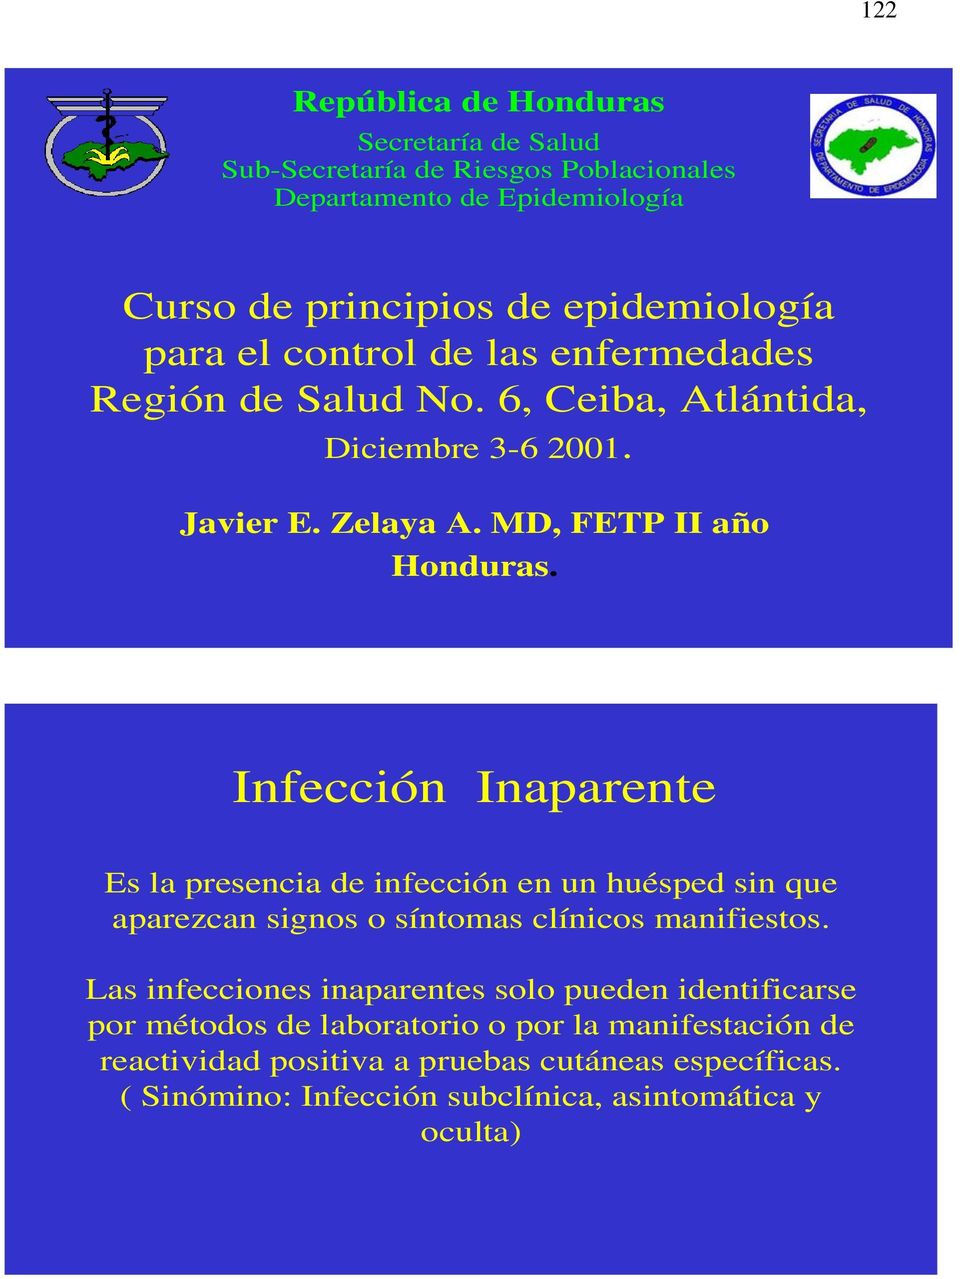 Infección Inaparente Es la presencia de infección en un huésped sin que aparezcan signos o síntomas clínicos manifiestos.